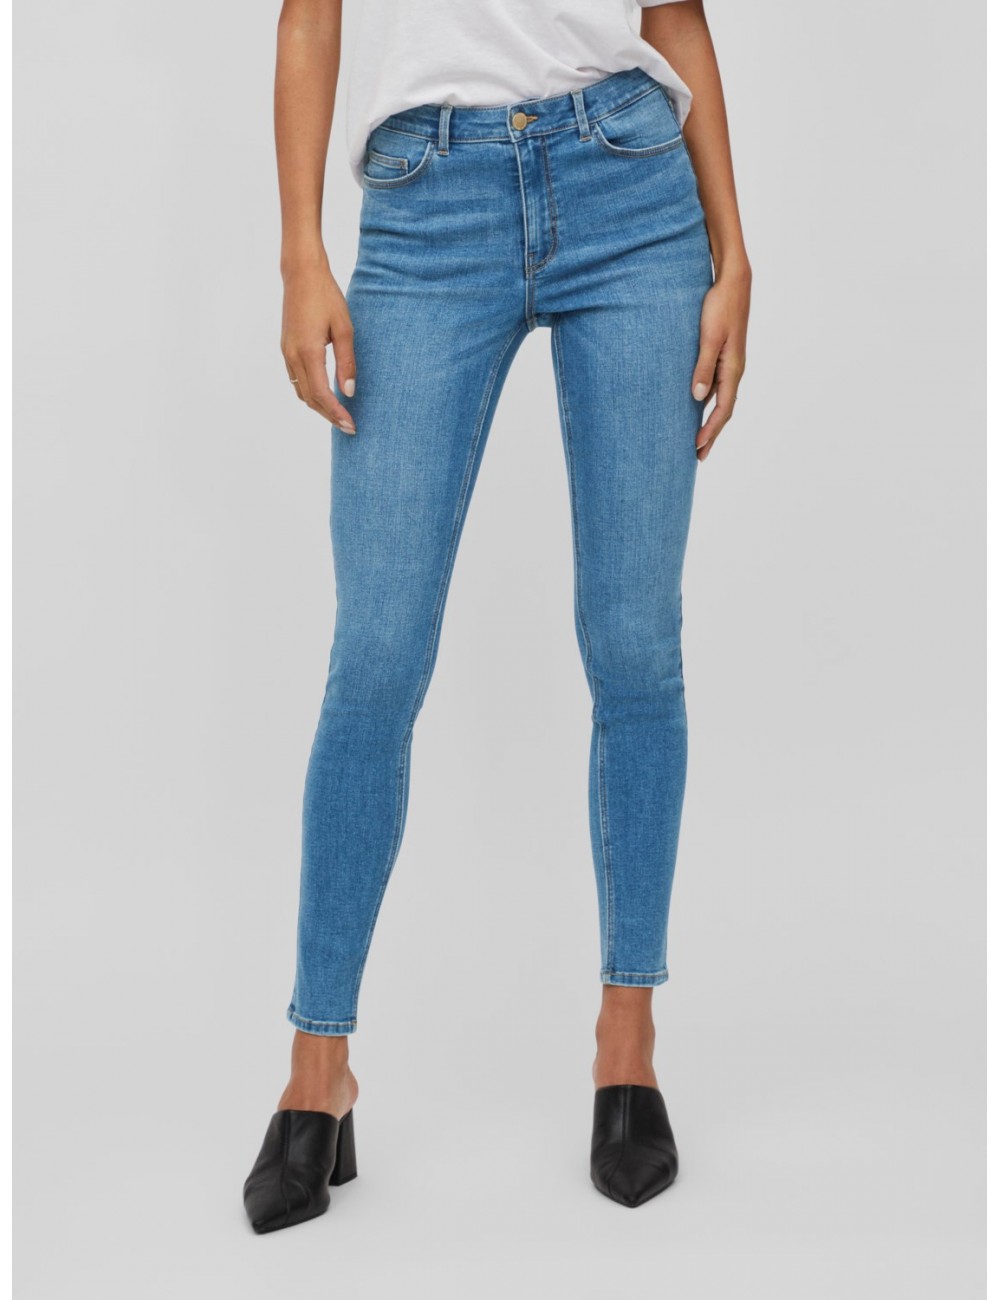 Pantalón Jeans modelo Sarah pitillo de Vila.